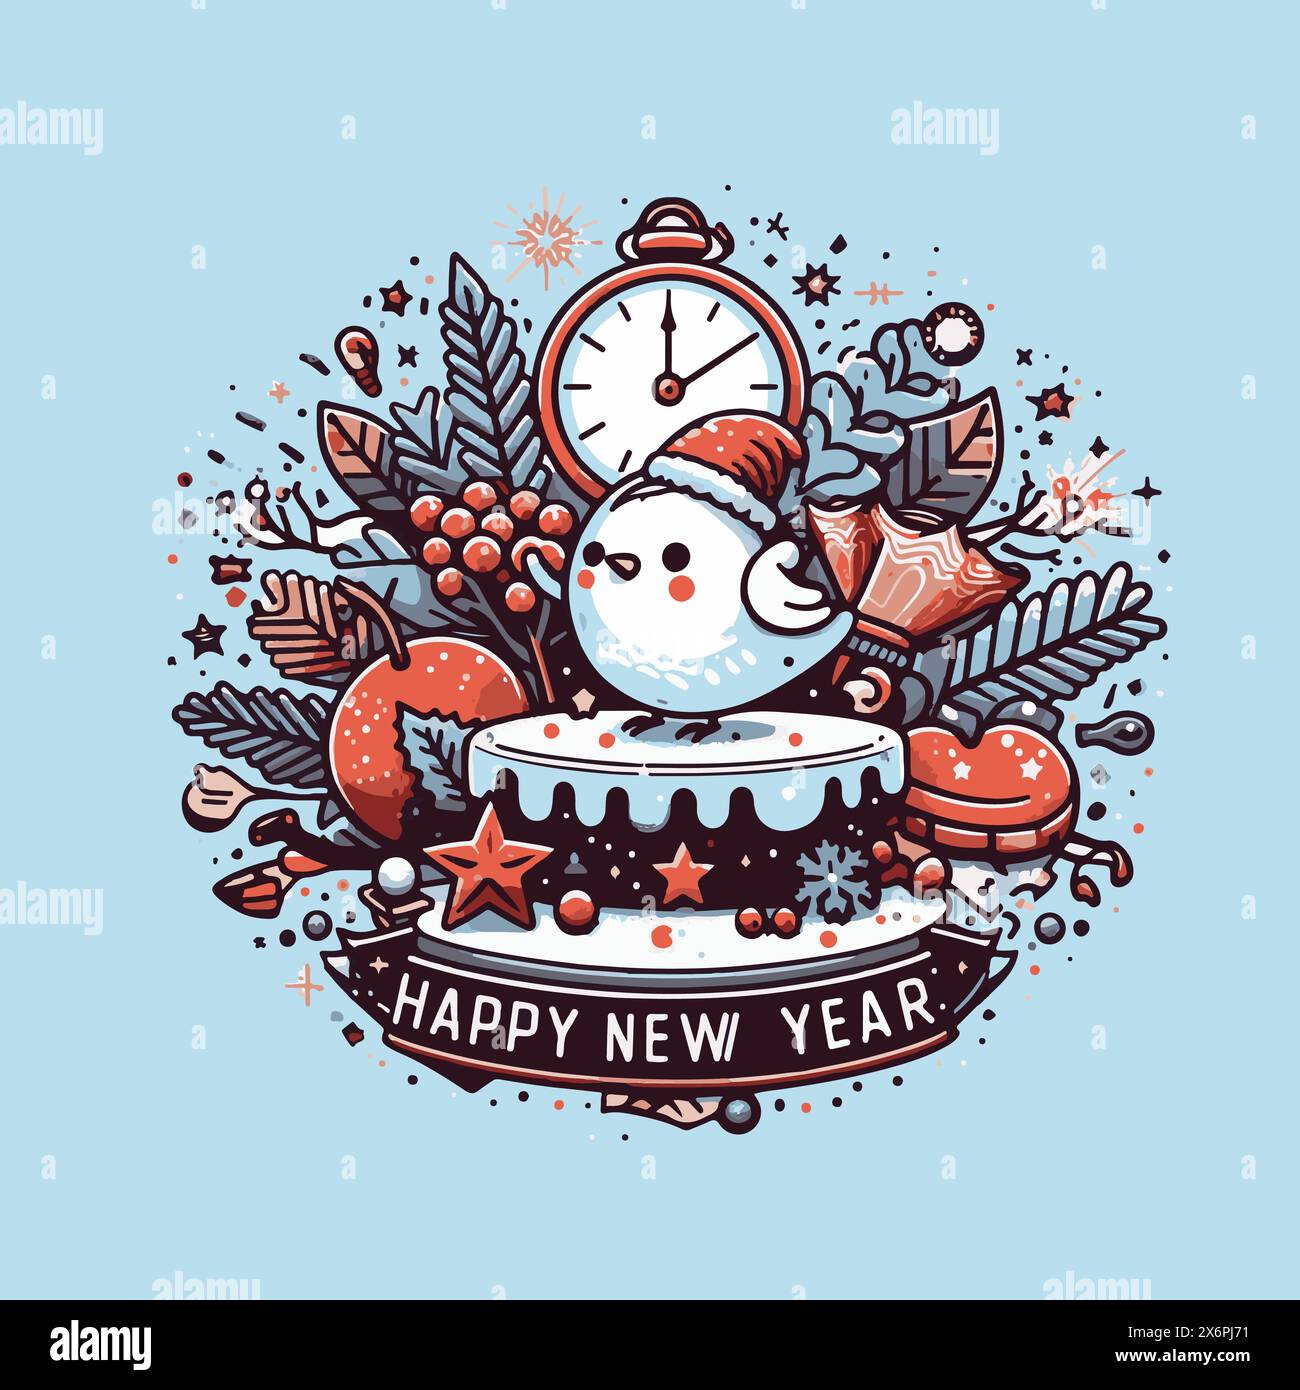 Vivaci "felice anno nuovo" illustrazioni vettoriali: Disegni celebrativi per accogliere il nuovo anno con gioia Illustrazione Vettoriale